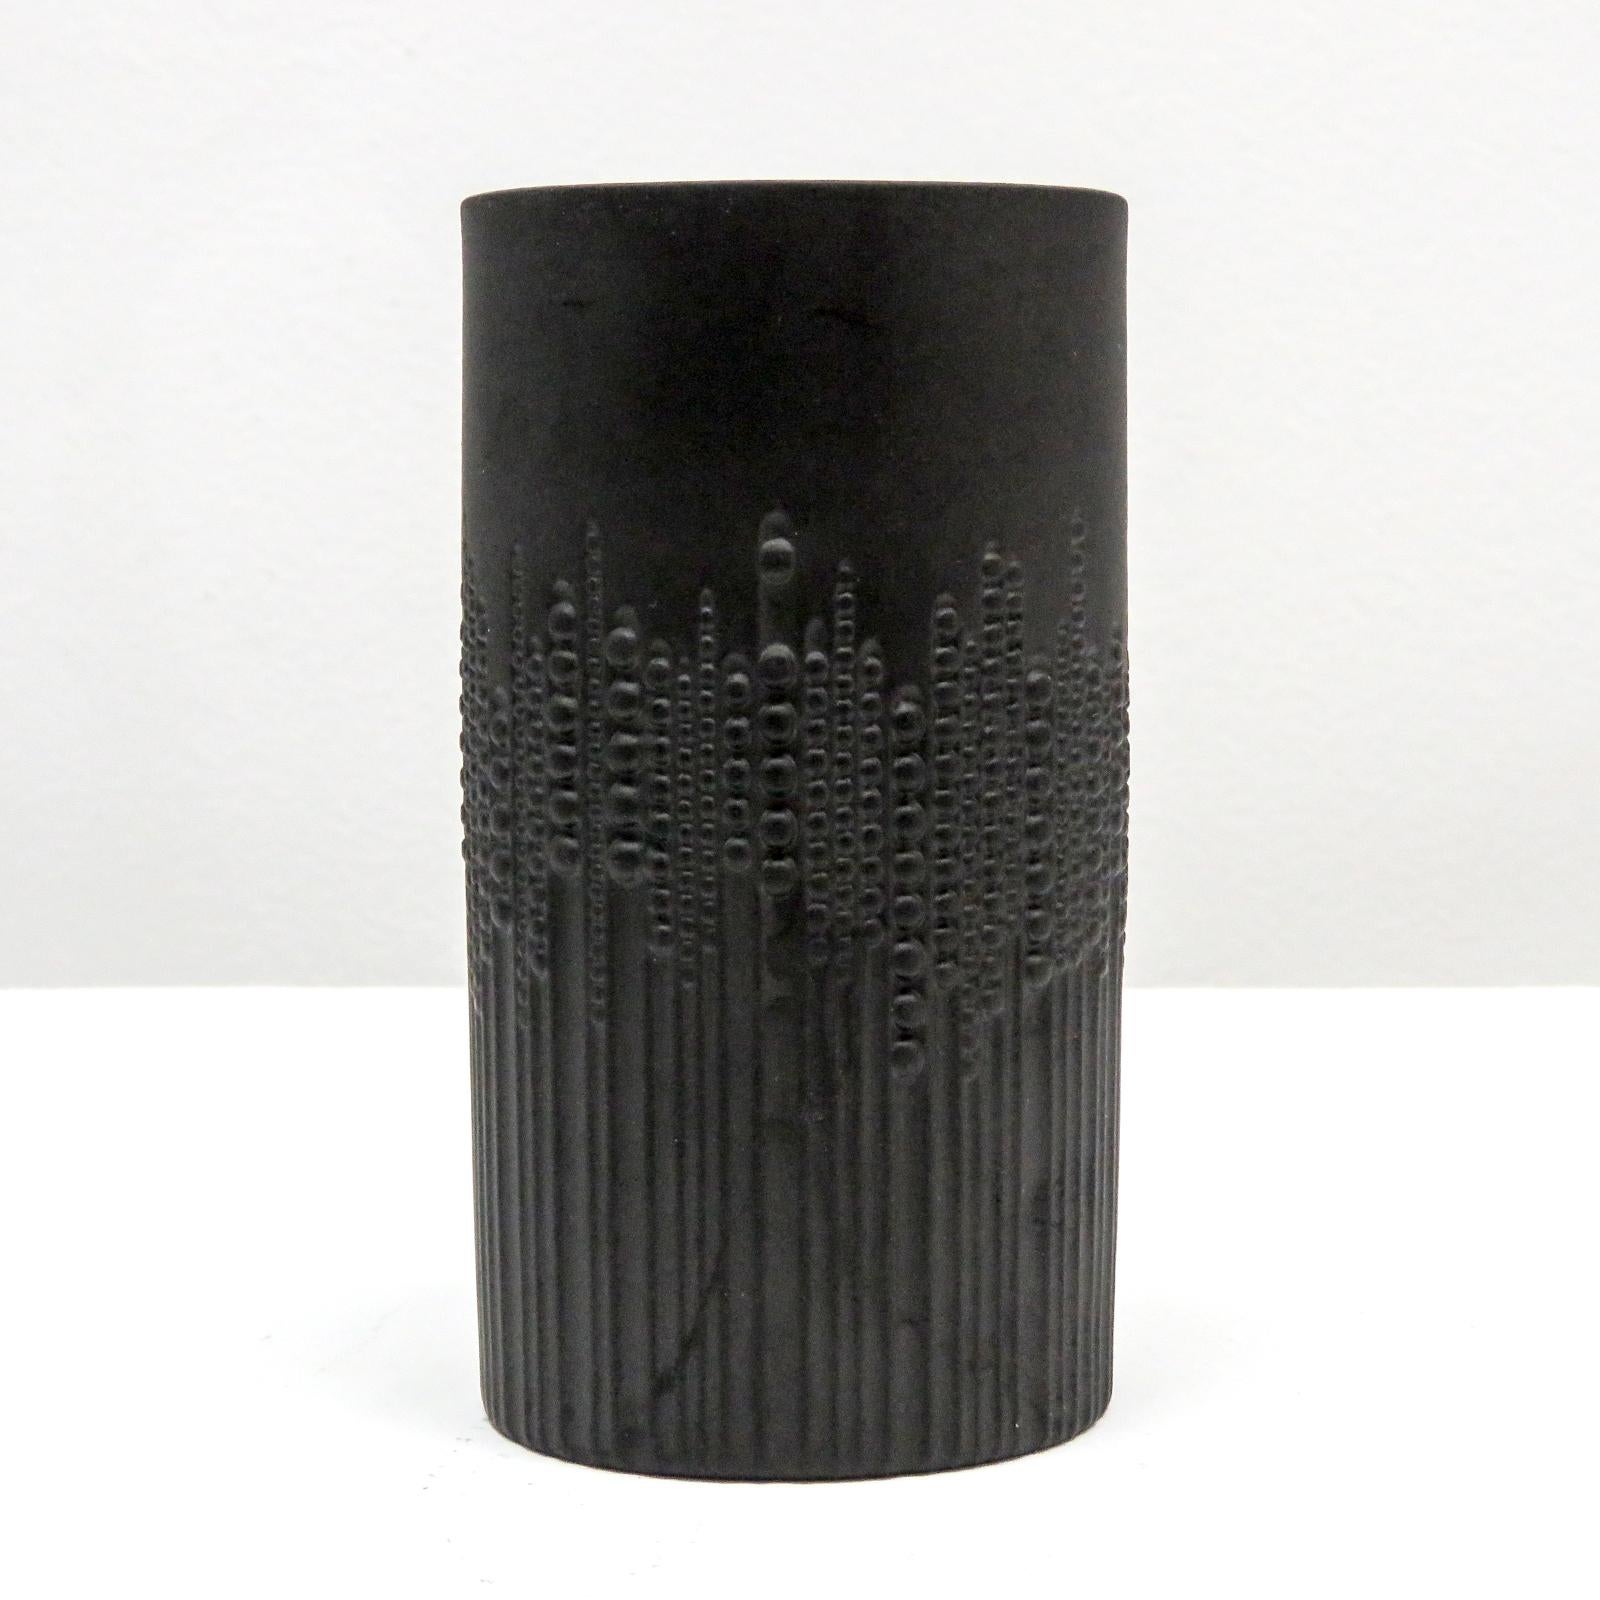 magnifique vase cylindrique en porcelaine noire mate conçu par Tapio Wirkkala pour Rosenthal/Siemens, avec un sublime relief de perles courant le long de lignes verticales, donne une impression de mouvement, marqué.